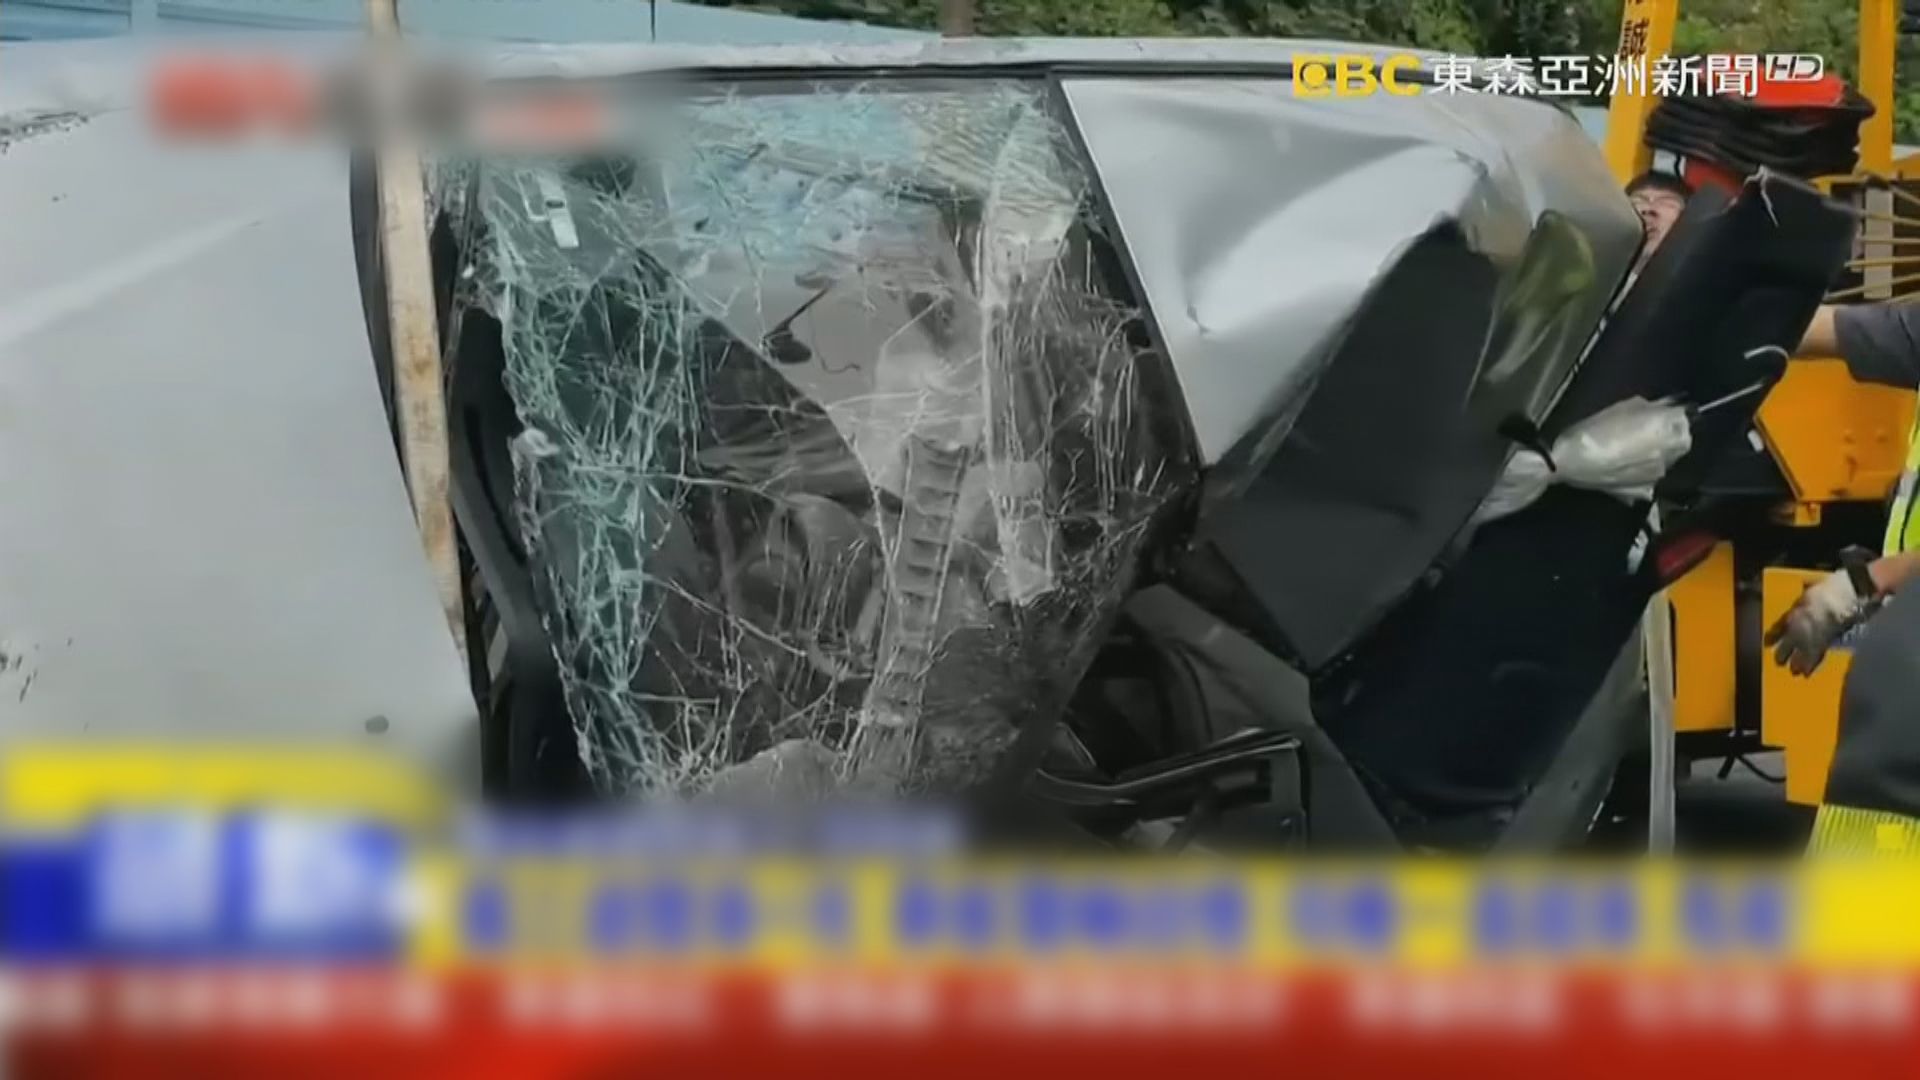 台灣雲林縣私家車與旅遊巴相撞 釀4死22傷